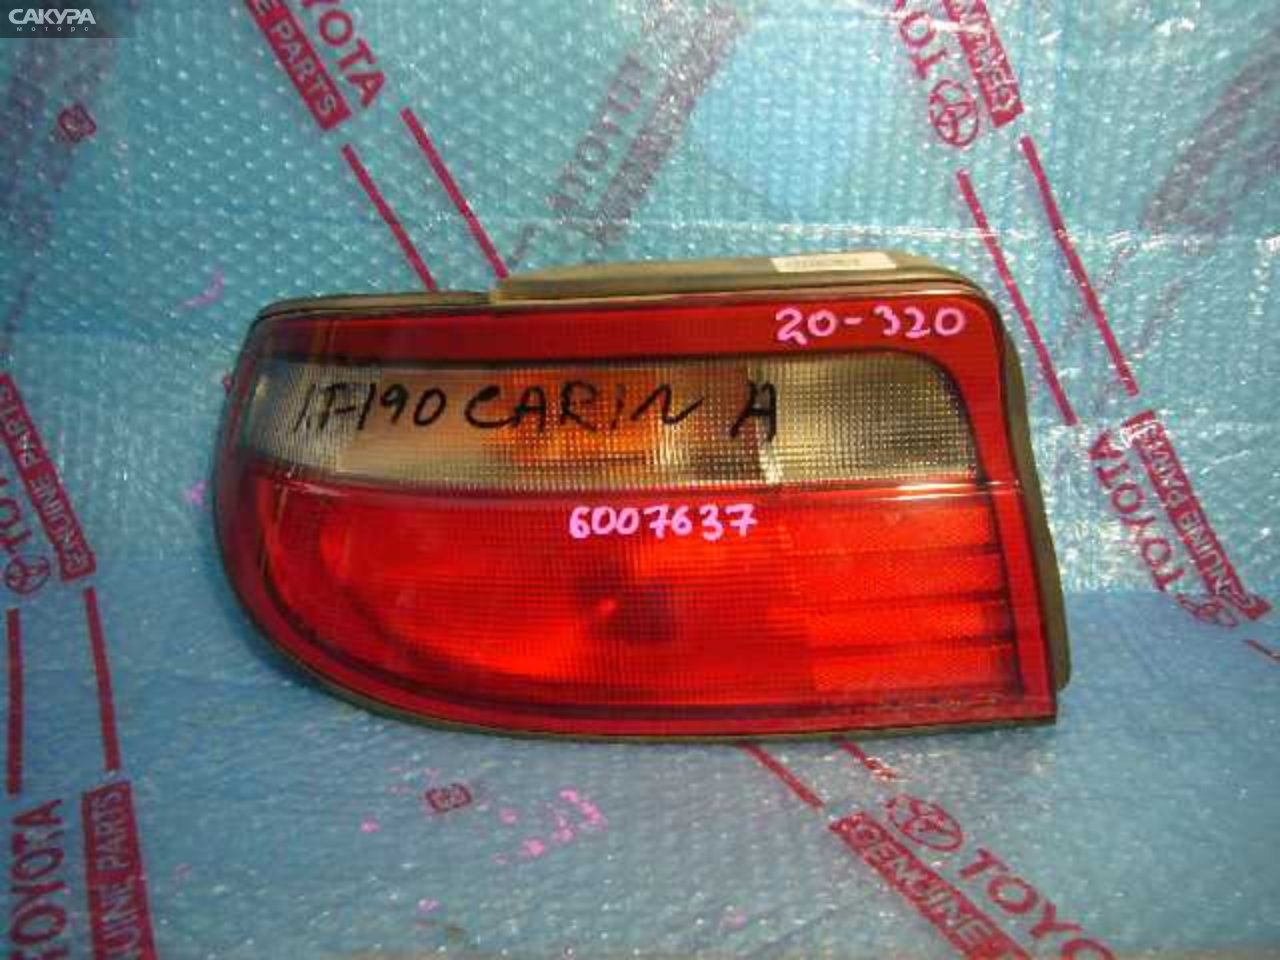 Фонарь стоп-сигнала левый Toyota Carina AT190 20-320: купить в Сакура Кемерово.